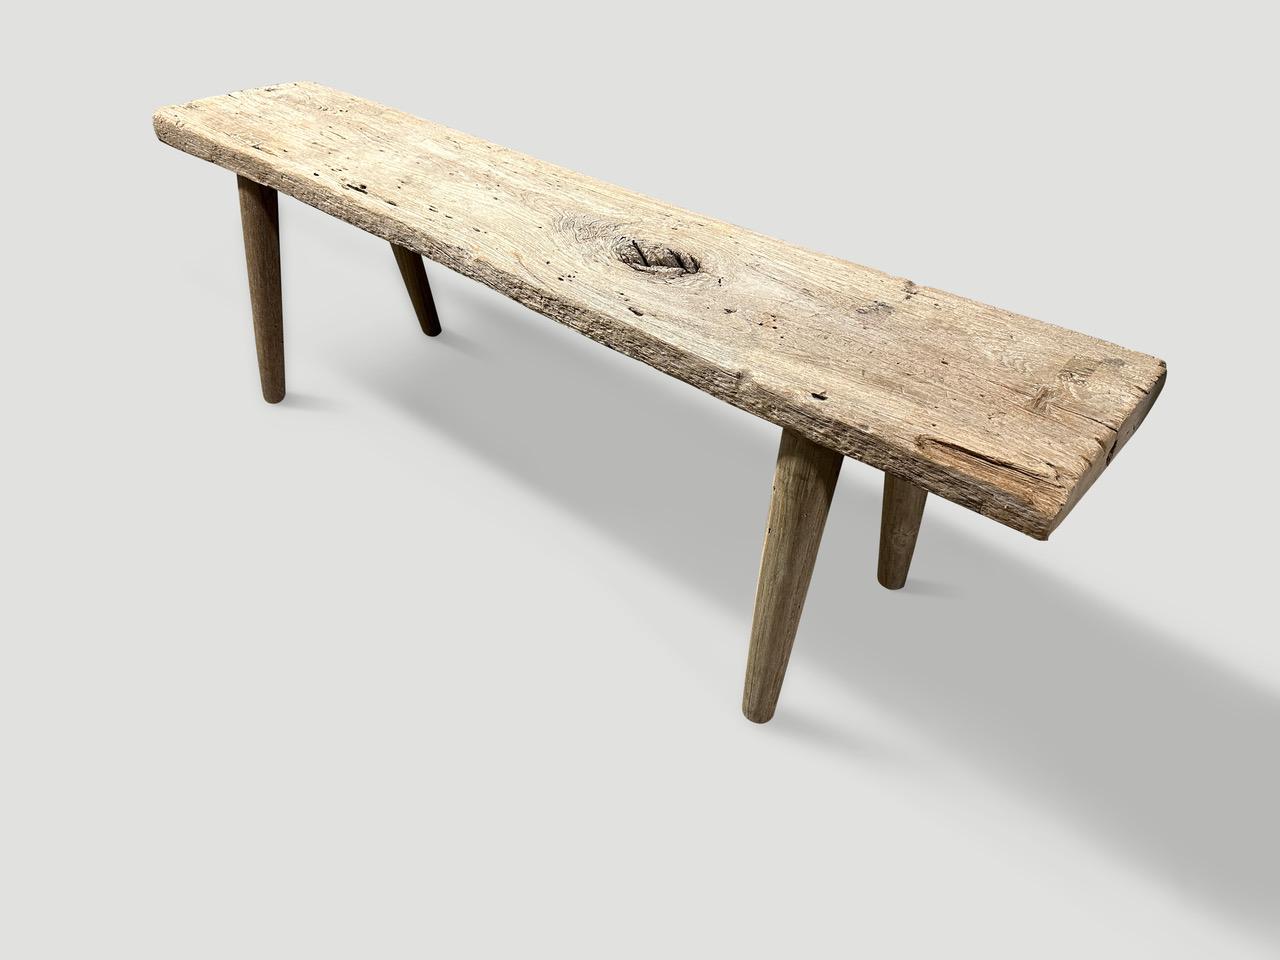 Ein einzelnes dickes antikes Paneel mit schönem Charakter im Holz. Wir haben glatte, minimalistische Teakholzbeine hinzugefügt, um diese schöne Bank herzustellen, und sie mit einer geheimen Zutat behandelt, die die einzigartige Holzmaserung zum